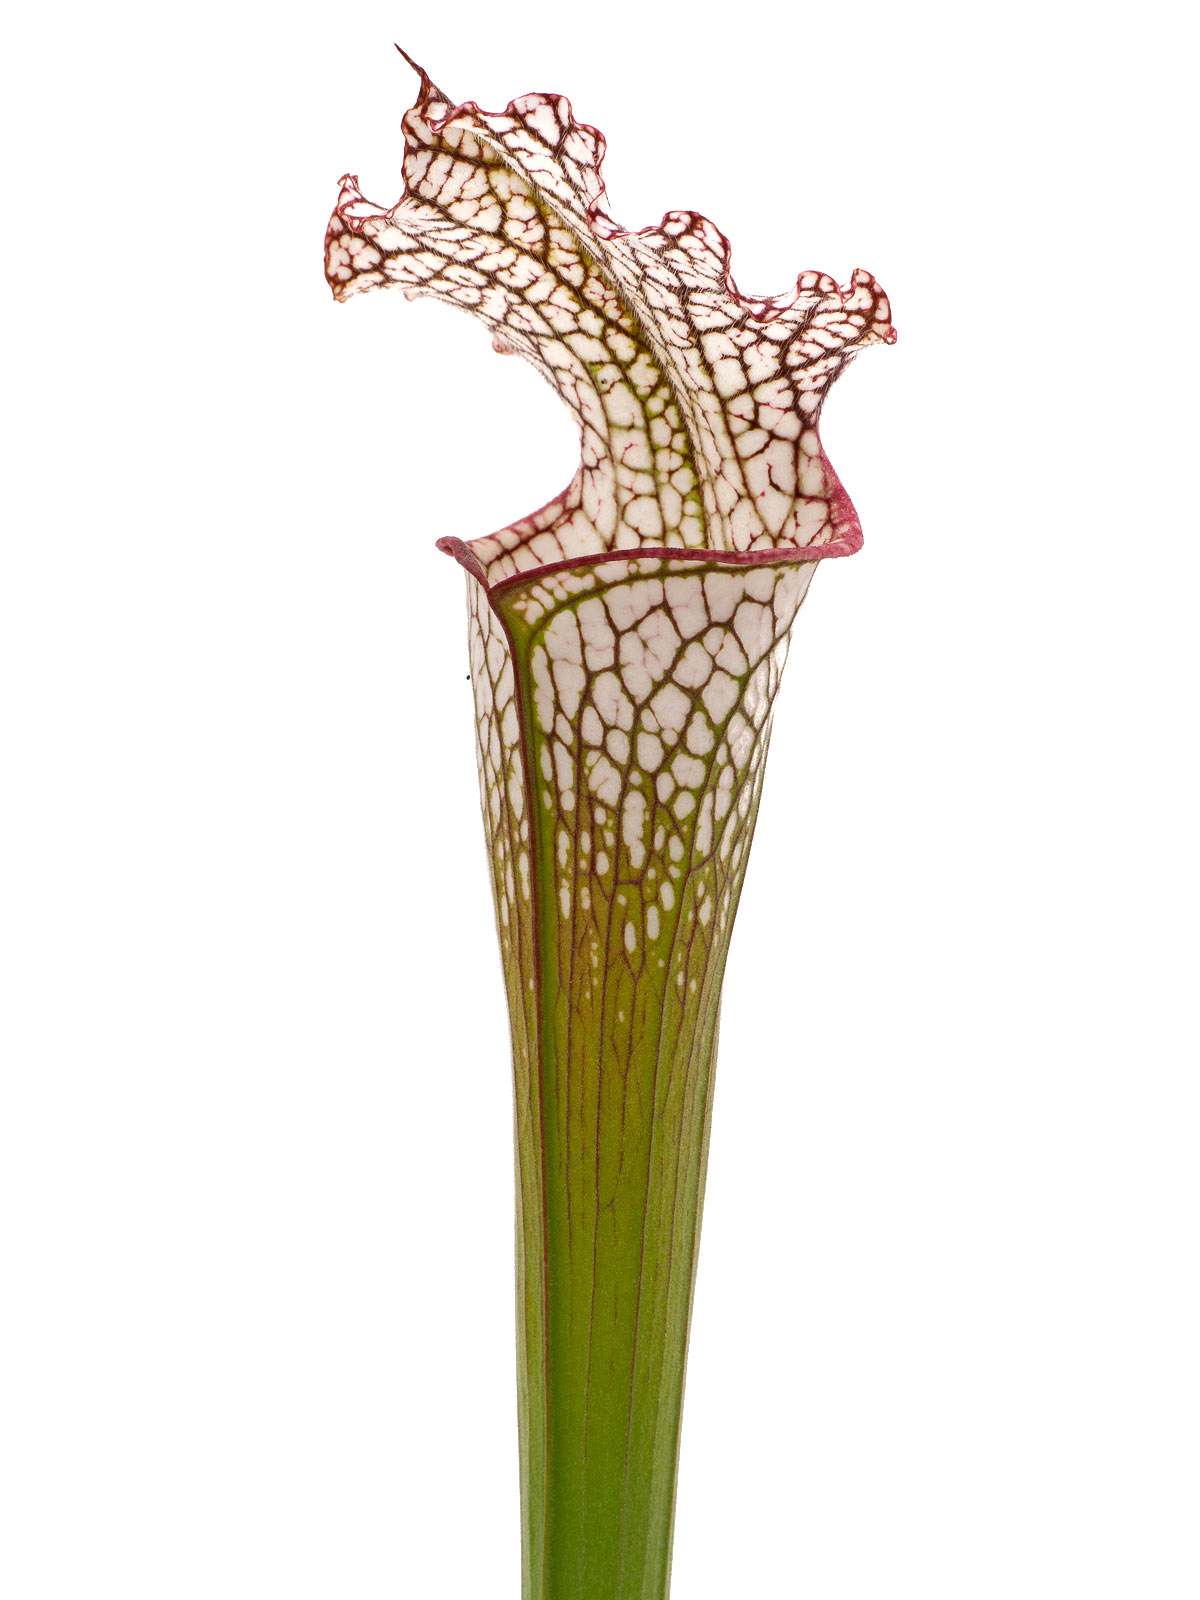 Sarracenia leucophylla - pubescent form, Joachim Jung